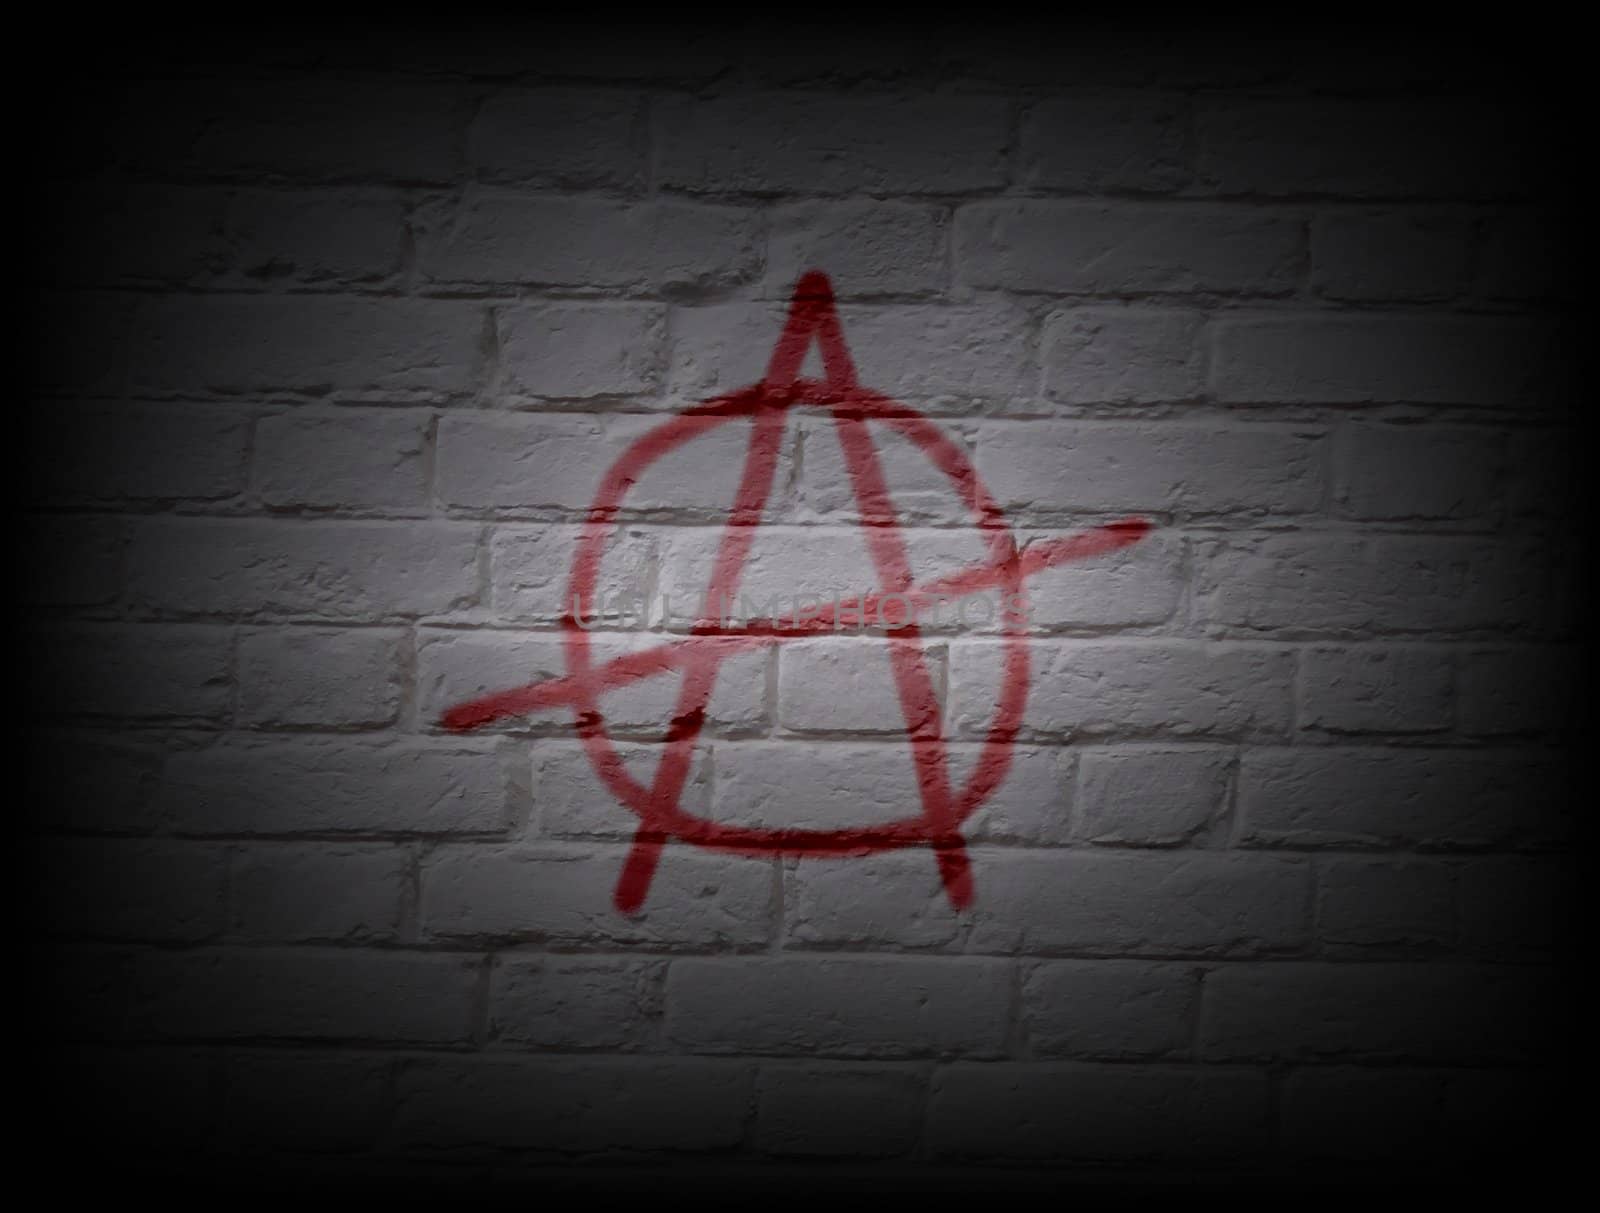 Anarchy Wall by darrenwhittingham